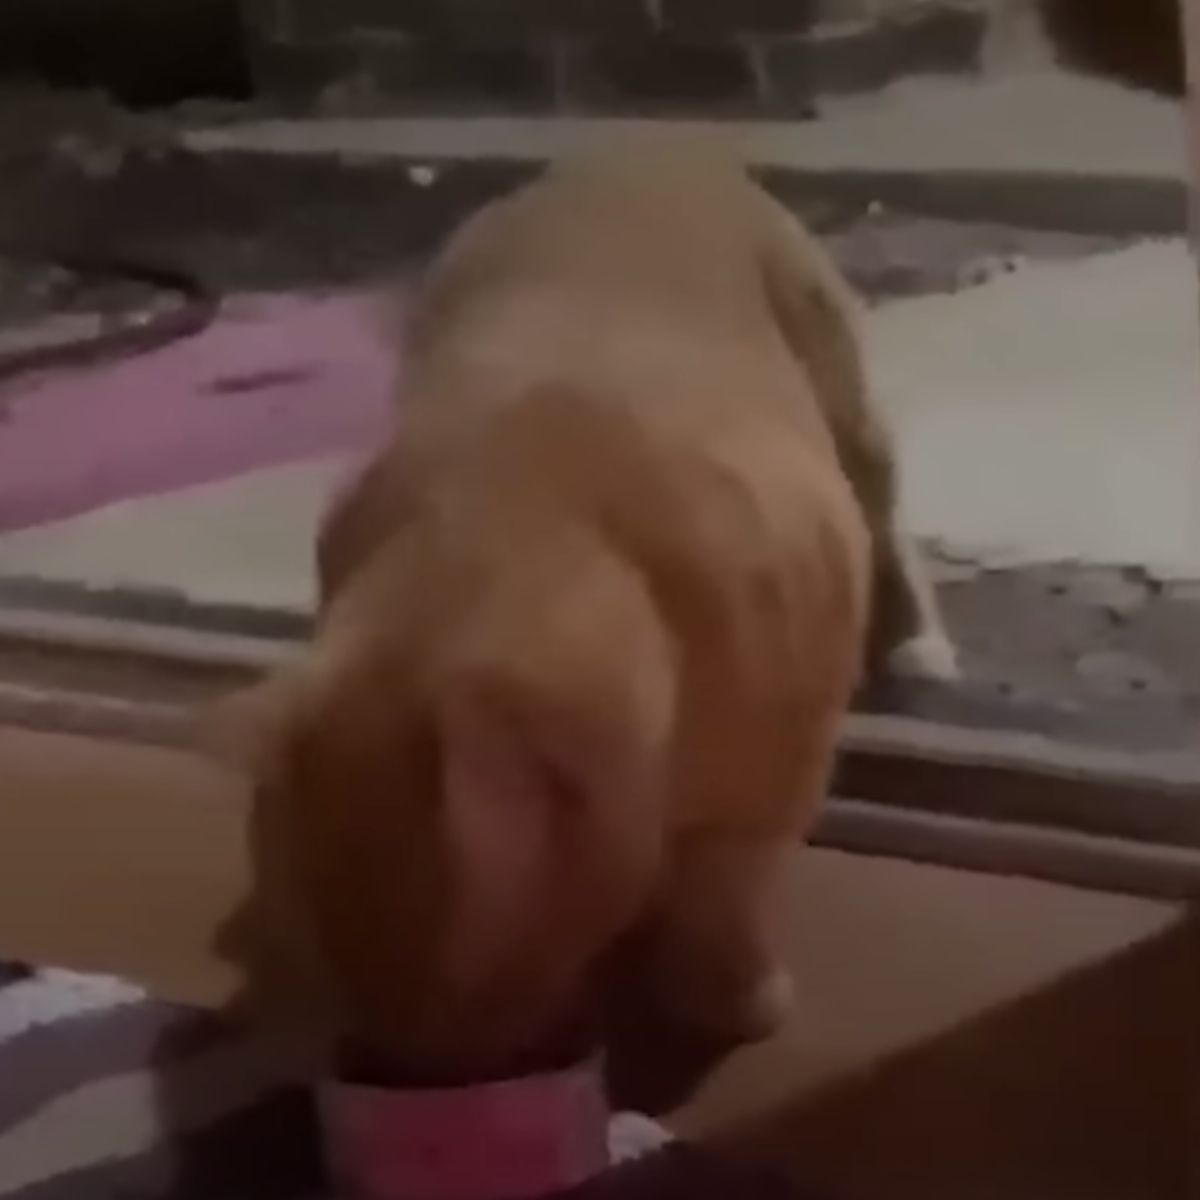 ginger cat eating